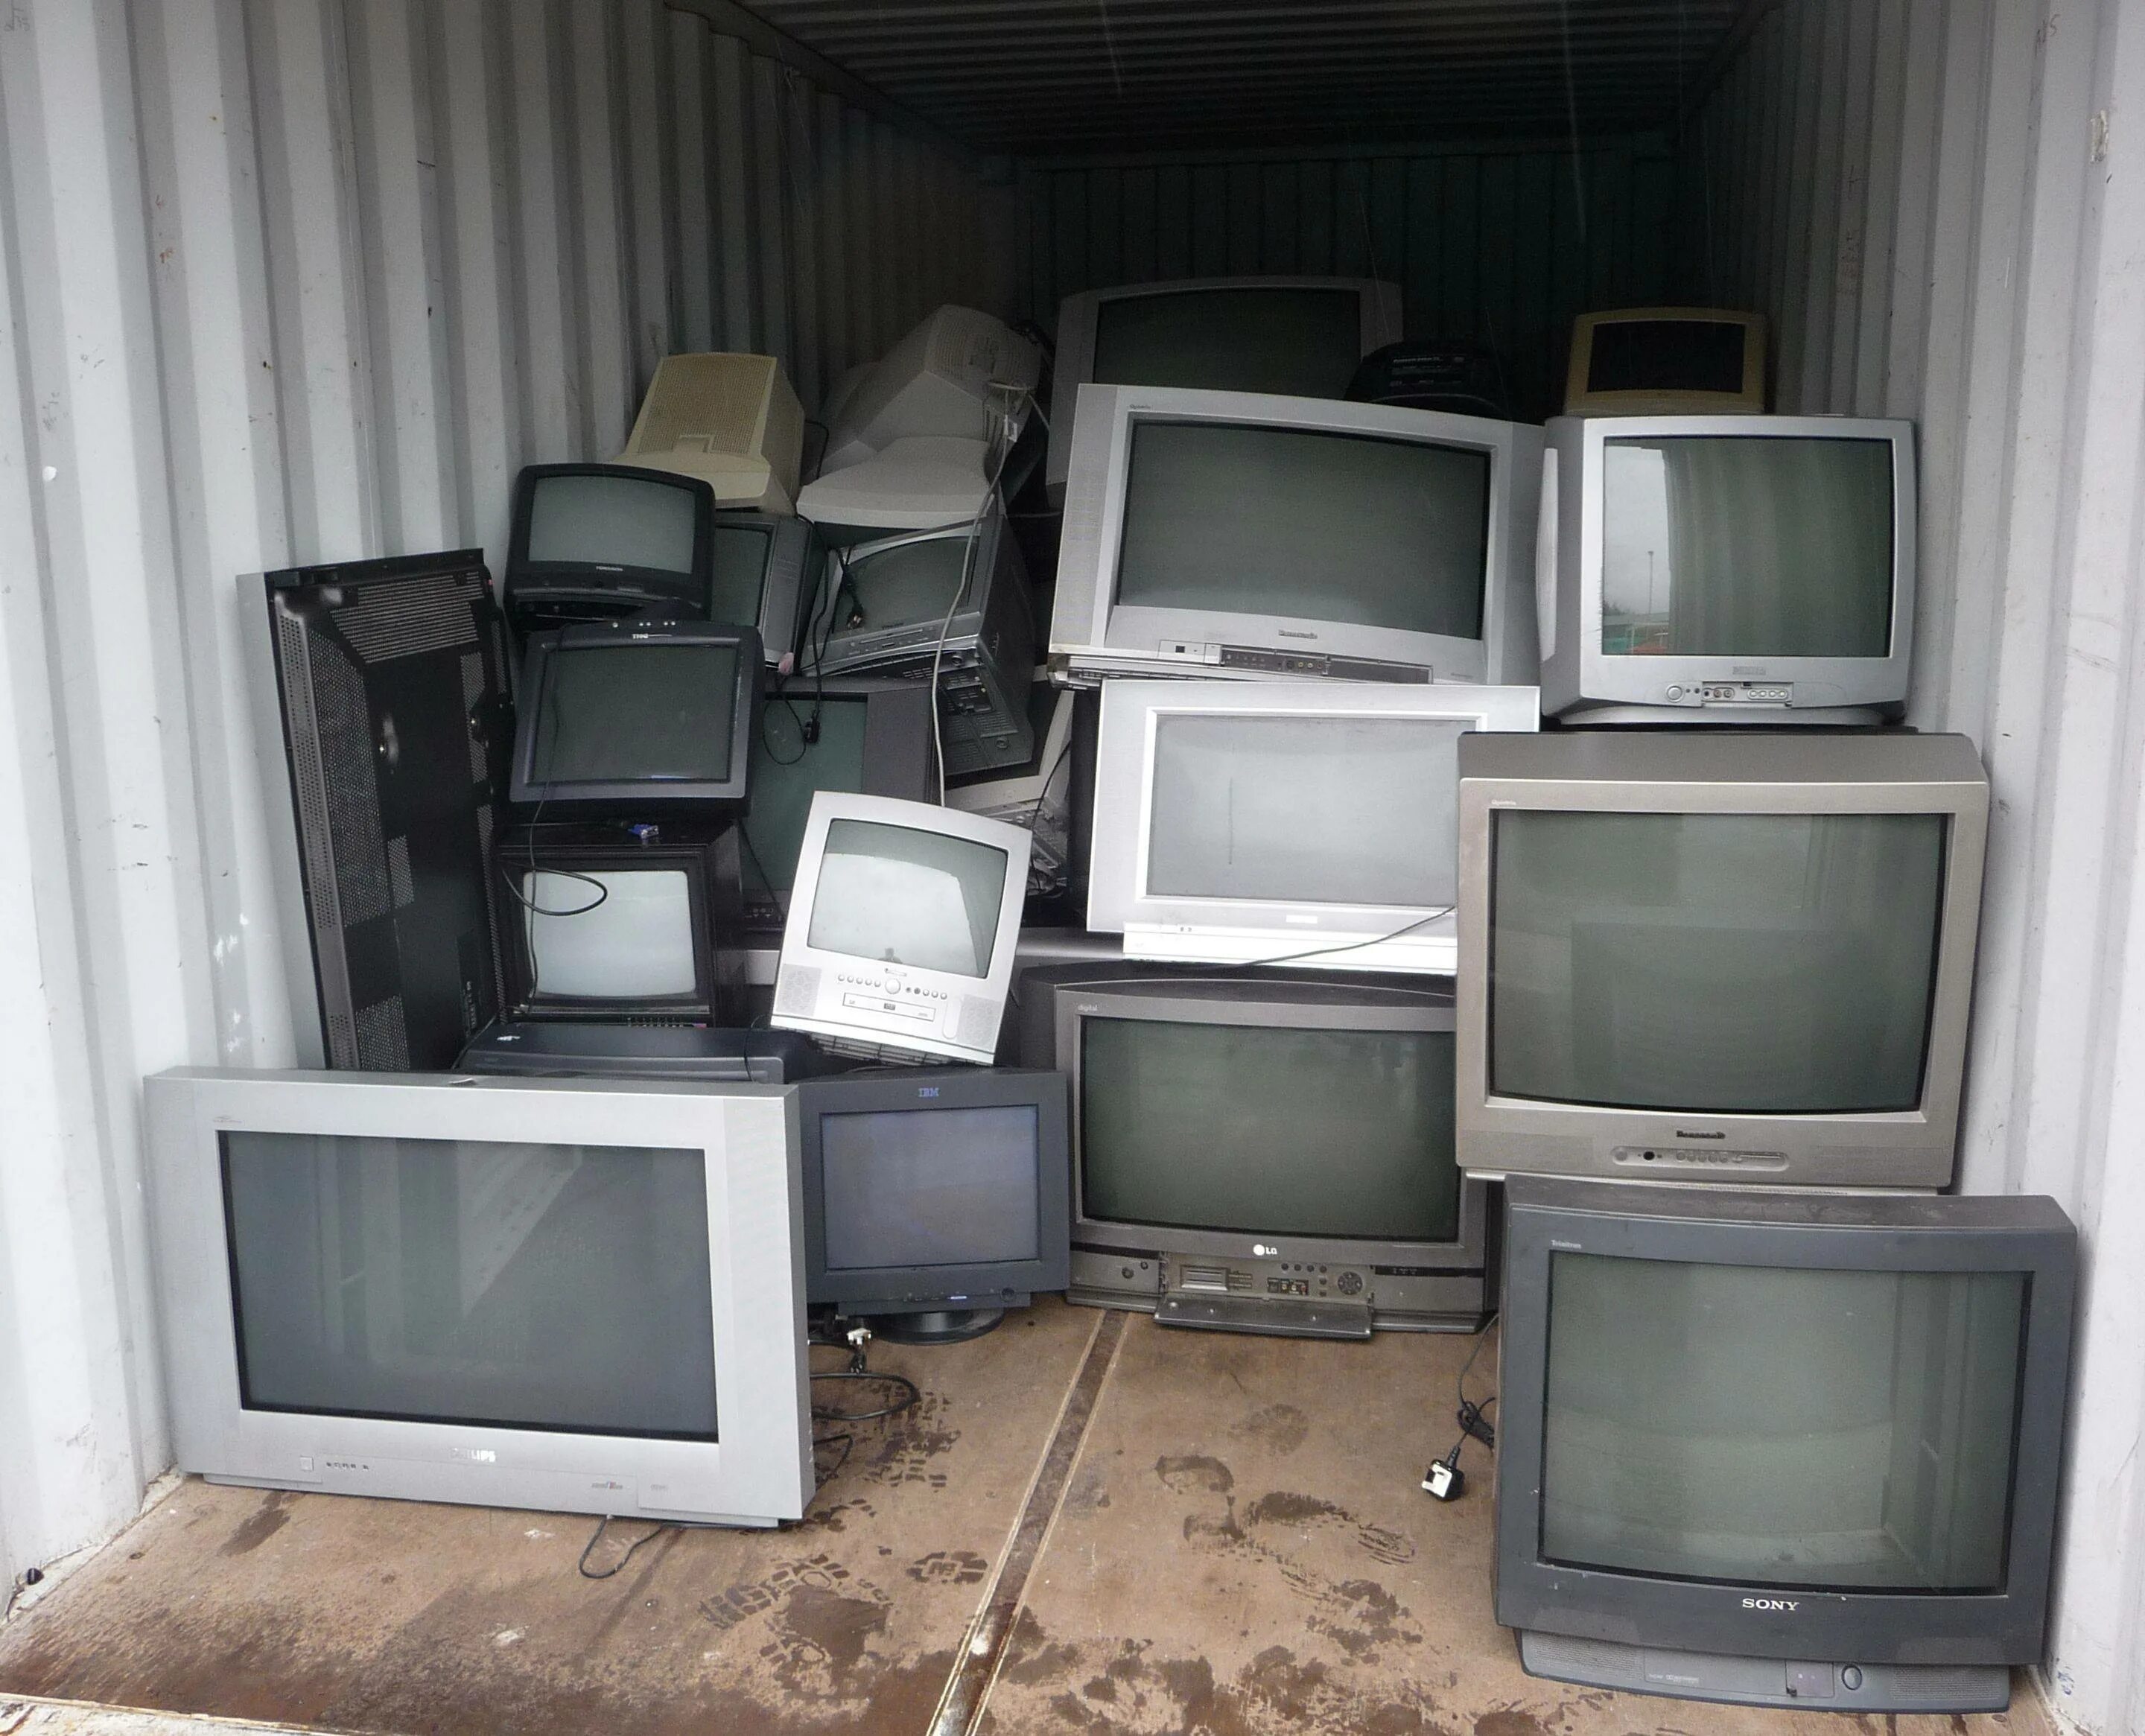 Можно сдать телевизор обратно. Старый телевизор. Телевизор с кинескопом. Скупают старые телевизоры. Старый кинескопный телевизор.